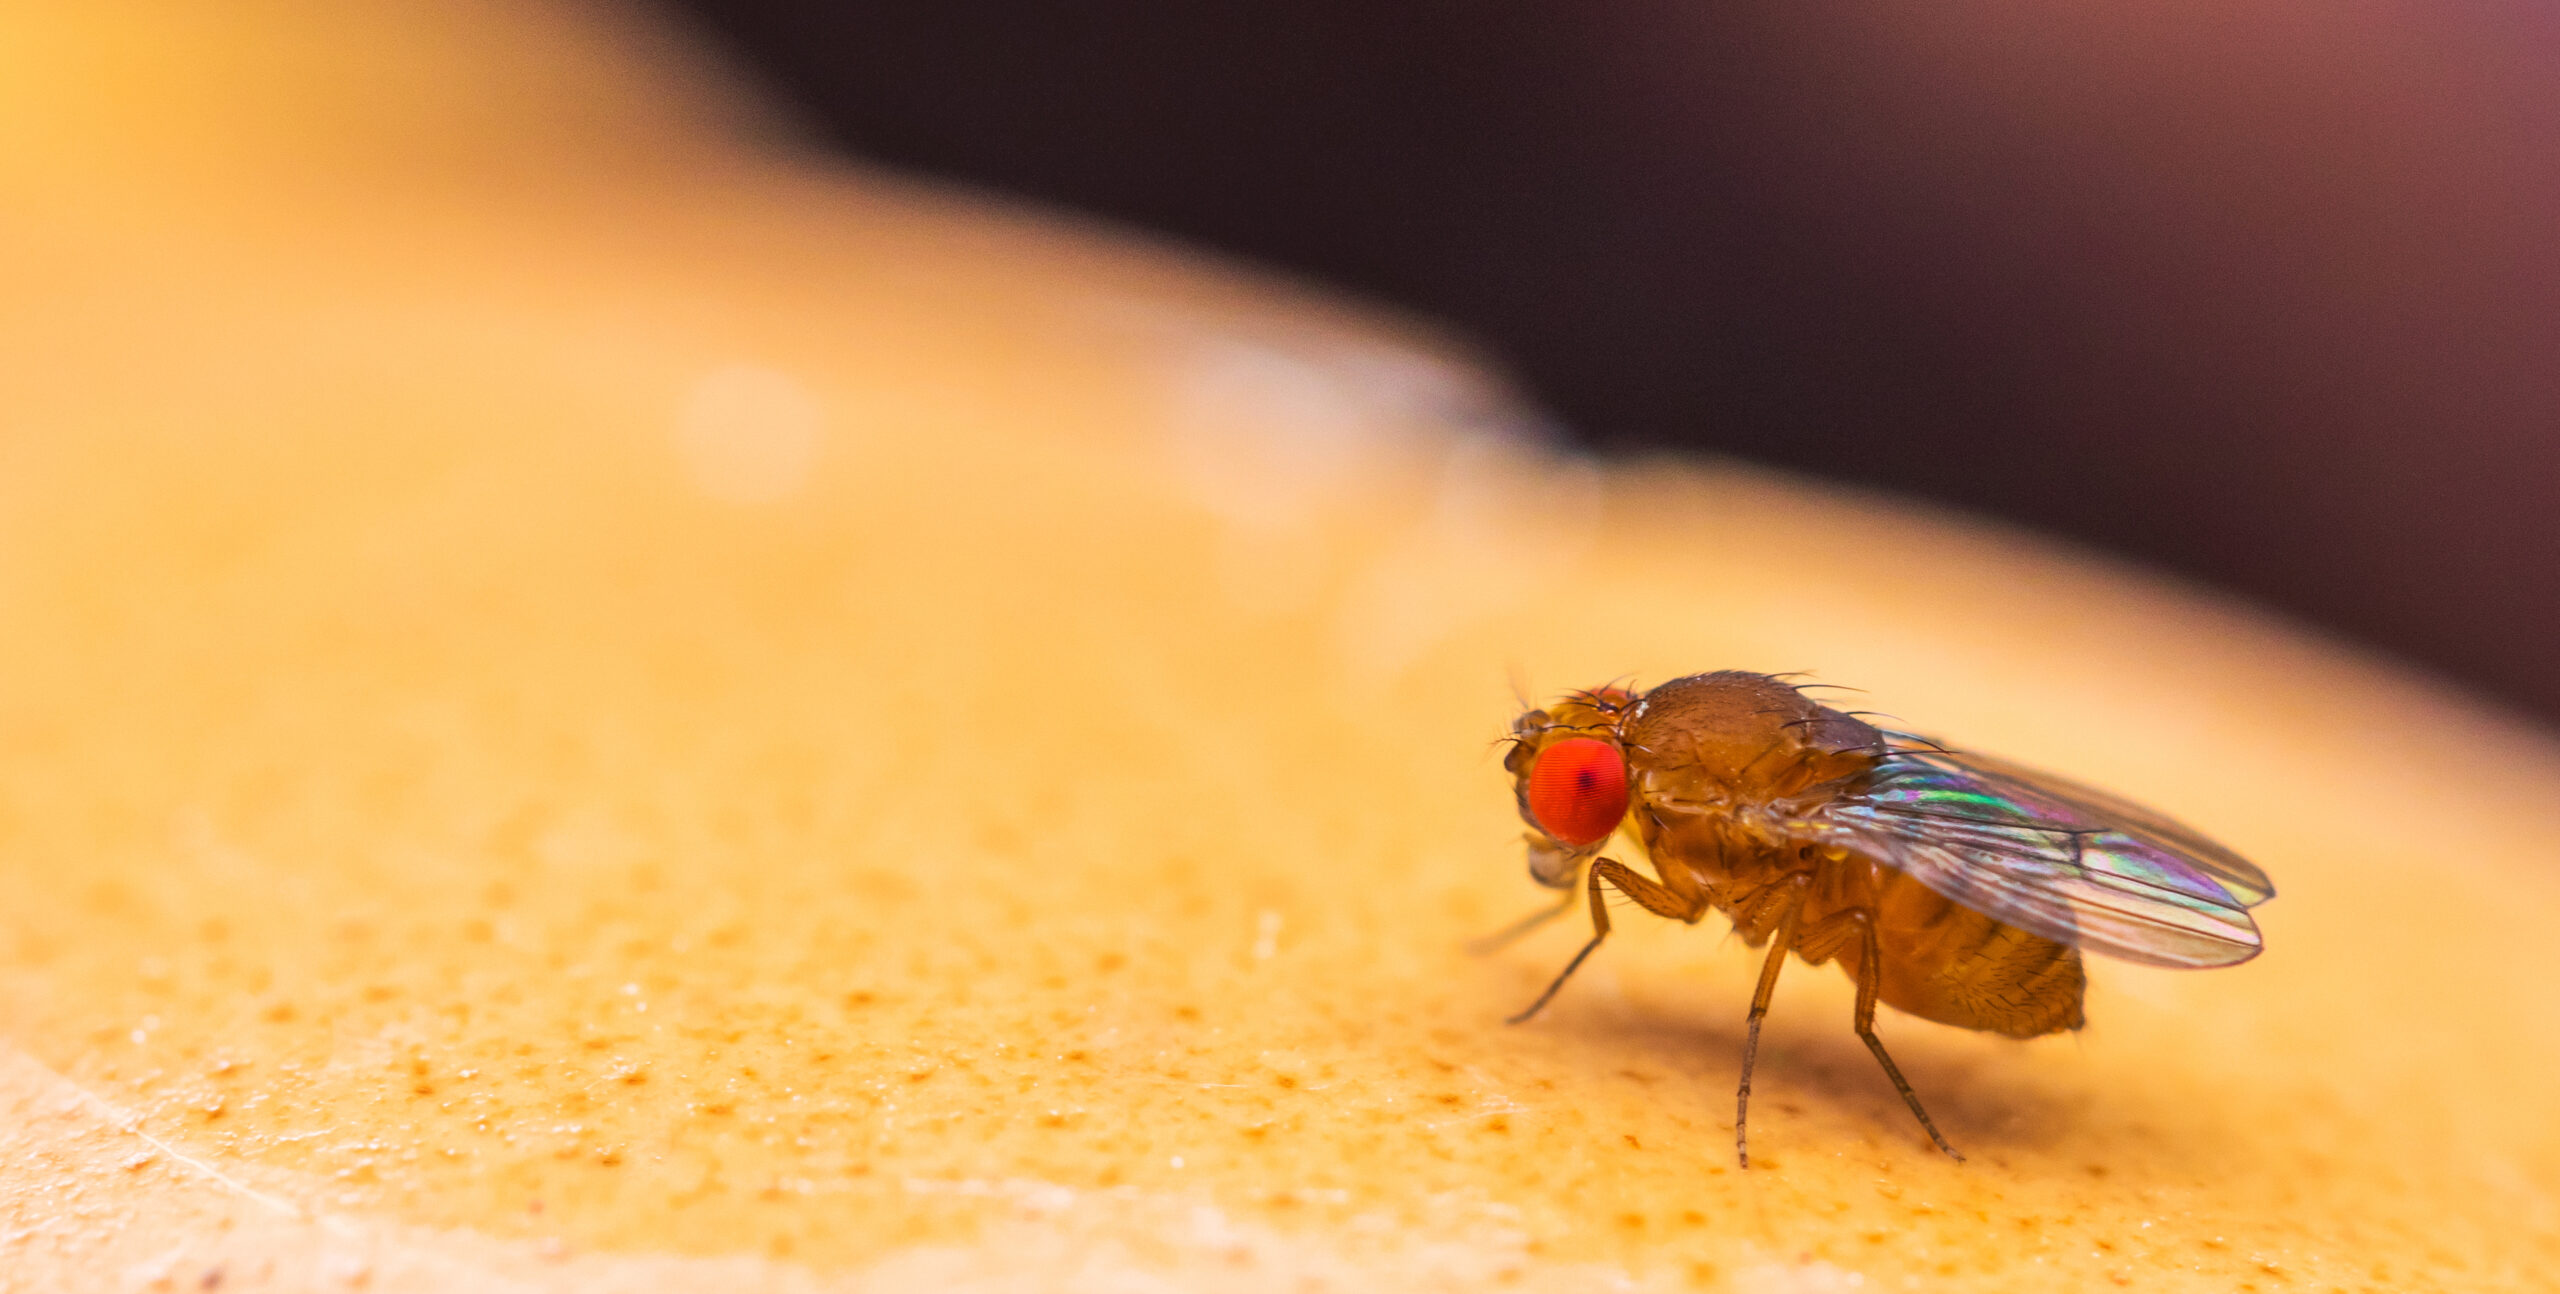 A macro shot of a fruit fly, drosophila